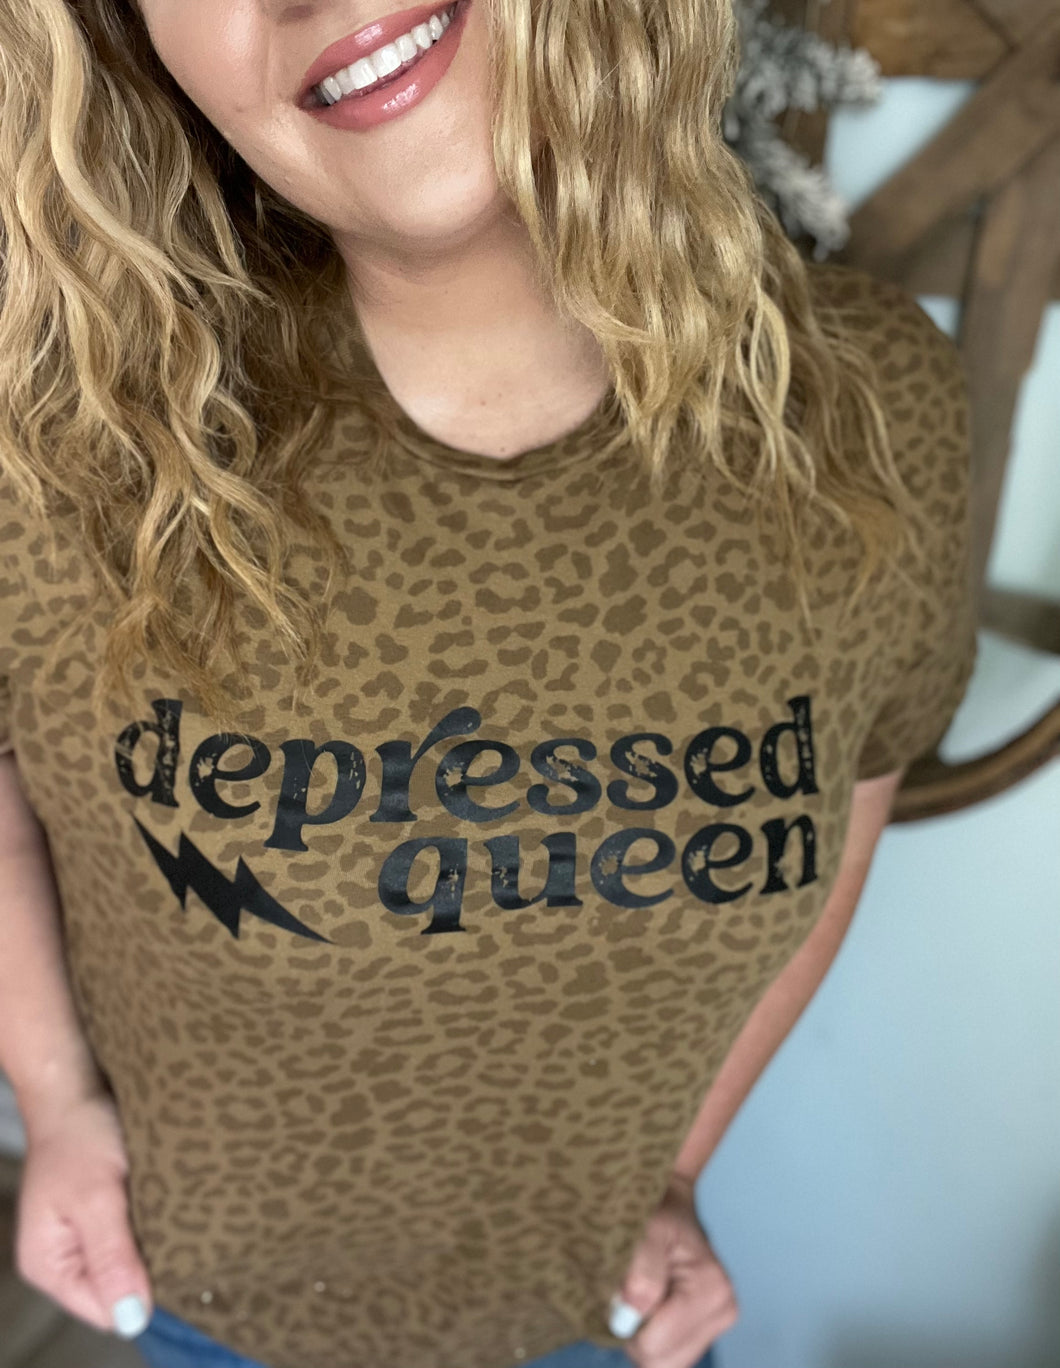 Depressed queen tee